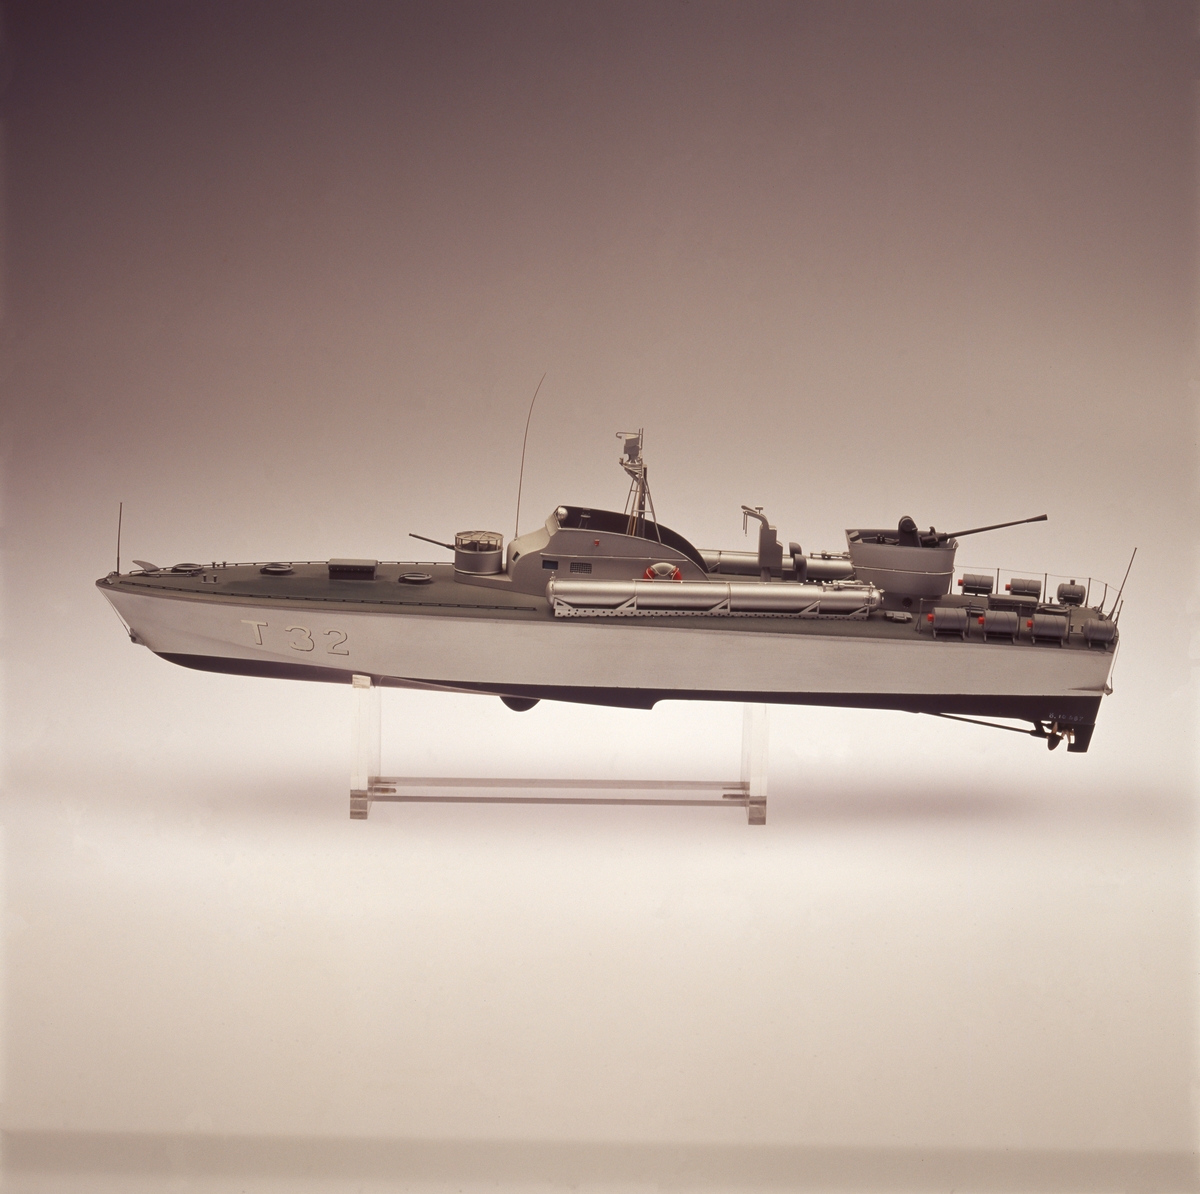 Föremålets form: Helmodell
Fartygsmodell
T 32, torpedbåt
Skala 1/50